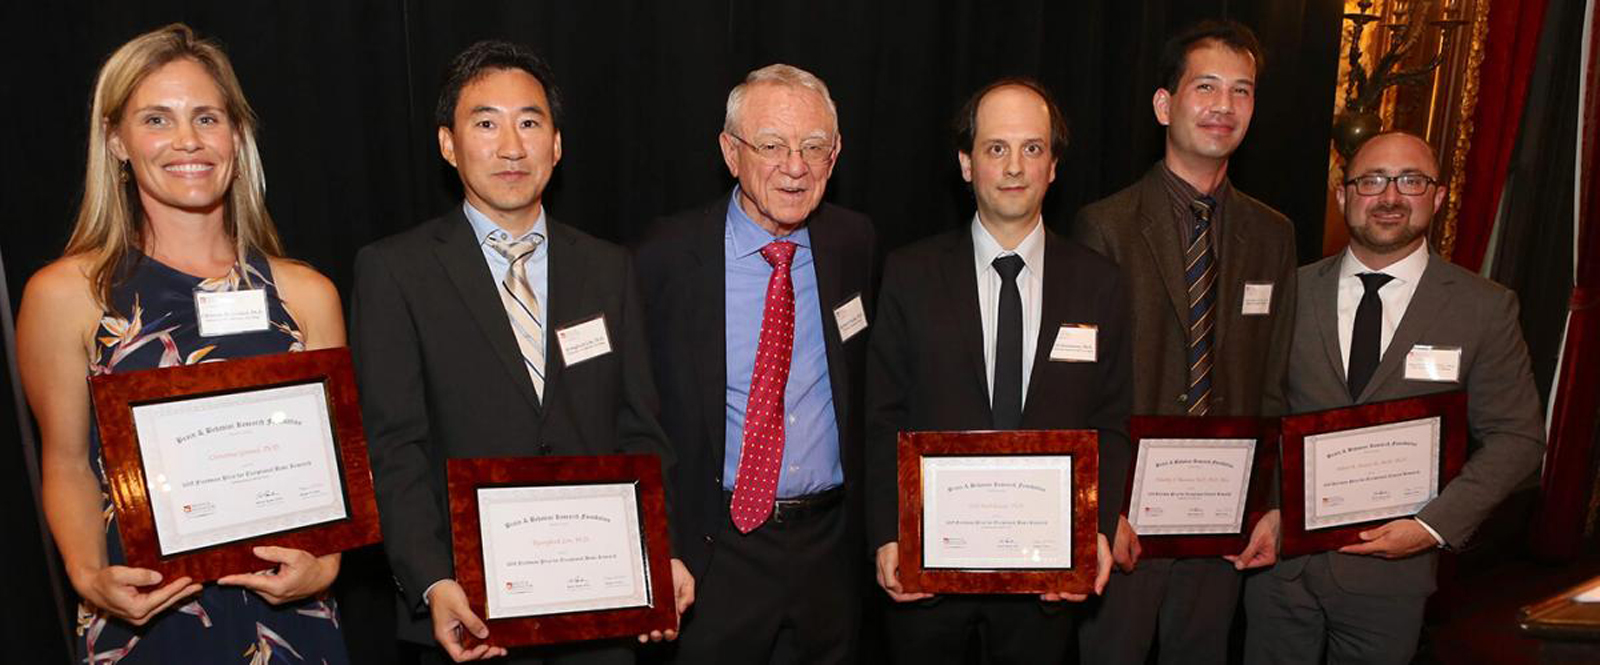 Recipients of 2018 Daniel X. Freedman Award